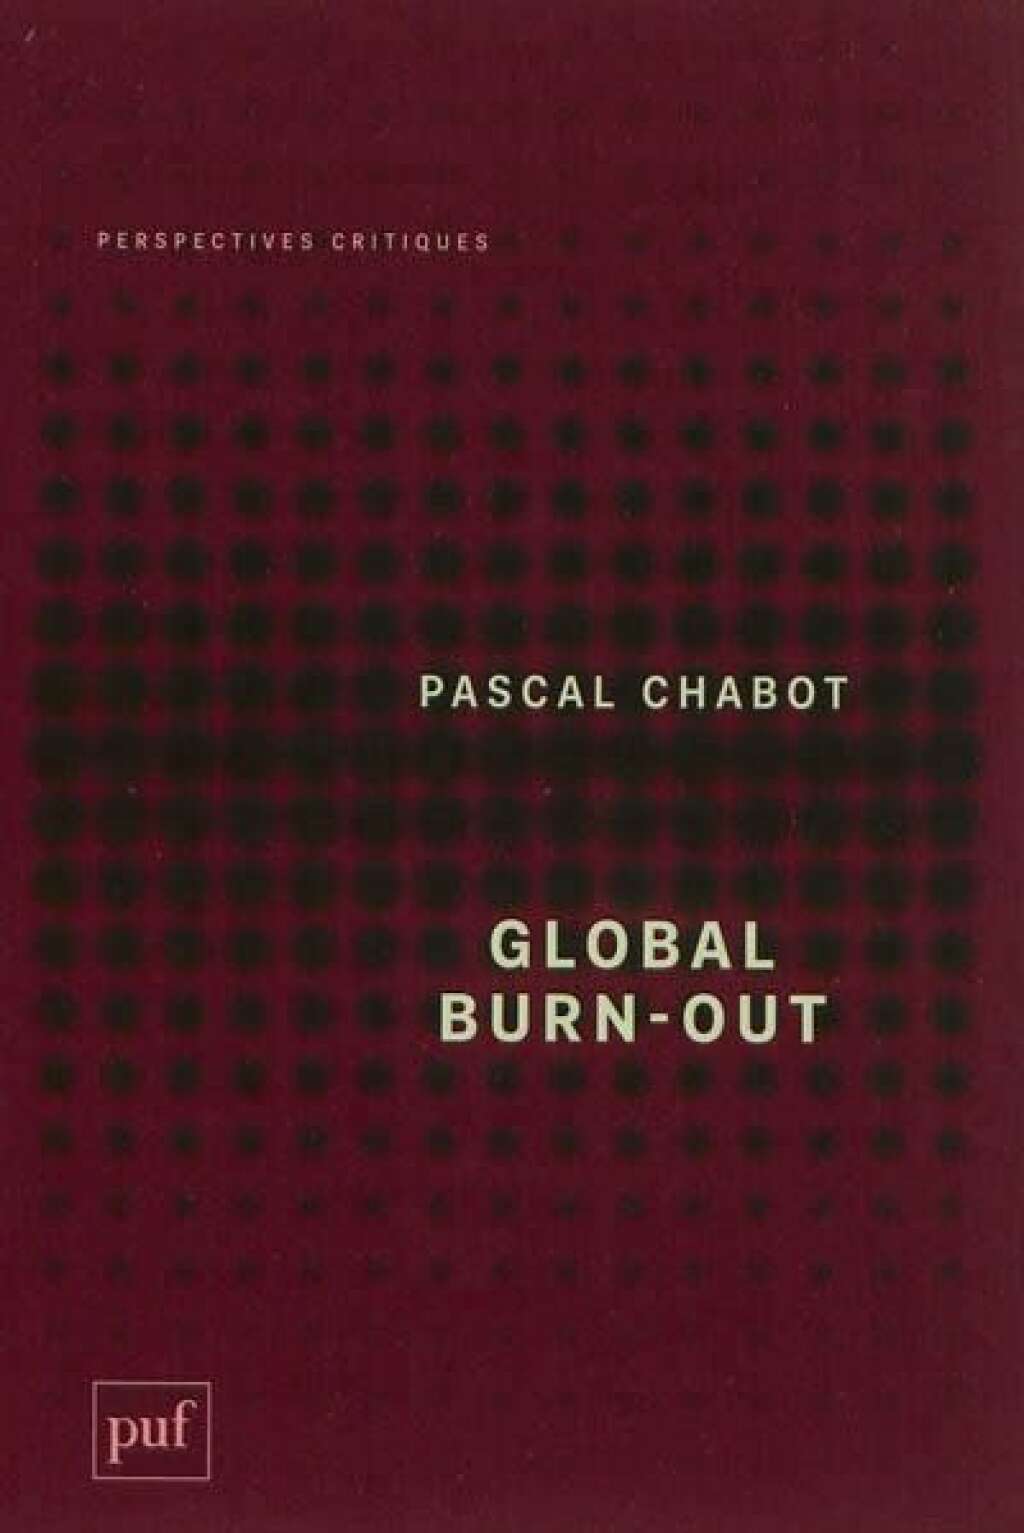 Global burn-out  - Pascal Chabot - Si vous êtes un habitué de la rubrique C'est La Vie, vous avez surement du voir, à plusieurs reprises, cette expression. Mais le burn-out, c'est quoi au juste ? <a href="http://www.amazon.fr/Global-burn-out-Pascal-Chabot/dp/2130608450" target="_blank">Ce livre</a> tente d'apporter un éclairage.  D'après l'auteur (lequel avait rédigé <a href="http://www.huffingtonpost.fr/pascal-chabot/le-burnout-est-global_b_2511560.html" target="_blank">une tribune pour le HuffPost</a>) ce phénomène est étroitement lié à notre époque: en anglais, burn-out signifie "s'épuiser, ne plus pouvoir avancer..." Avant tout, ce problème est un mal personnel qui se déclare lorsque les personnes se trouvent dans un état de fatigue et d'anxiété exacerbé, notamment à cause de leur activité professionnelle.   Mais pas seulement: "Il est aussi un trouble miroir où se reflètent certaines valeurs excessives de notre société: son culte du plus, du trop, de la performance, de la maximisation" décrypte le philosophe.